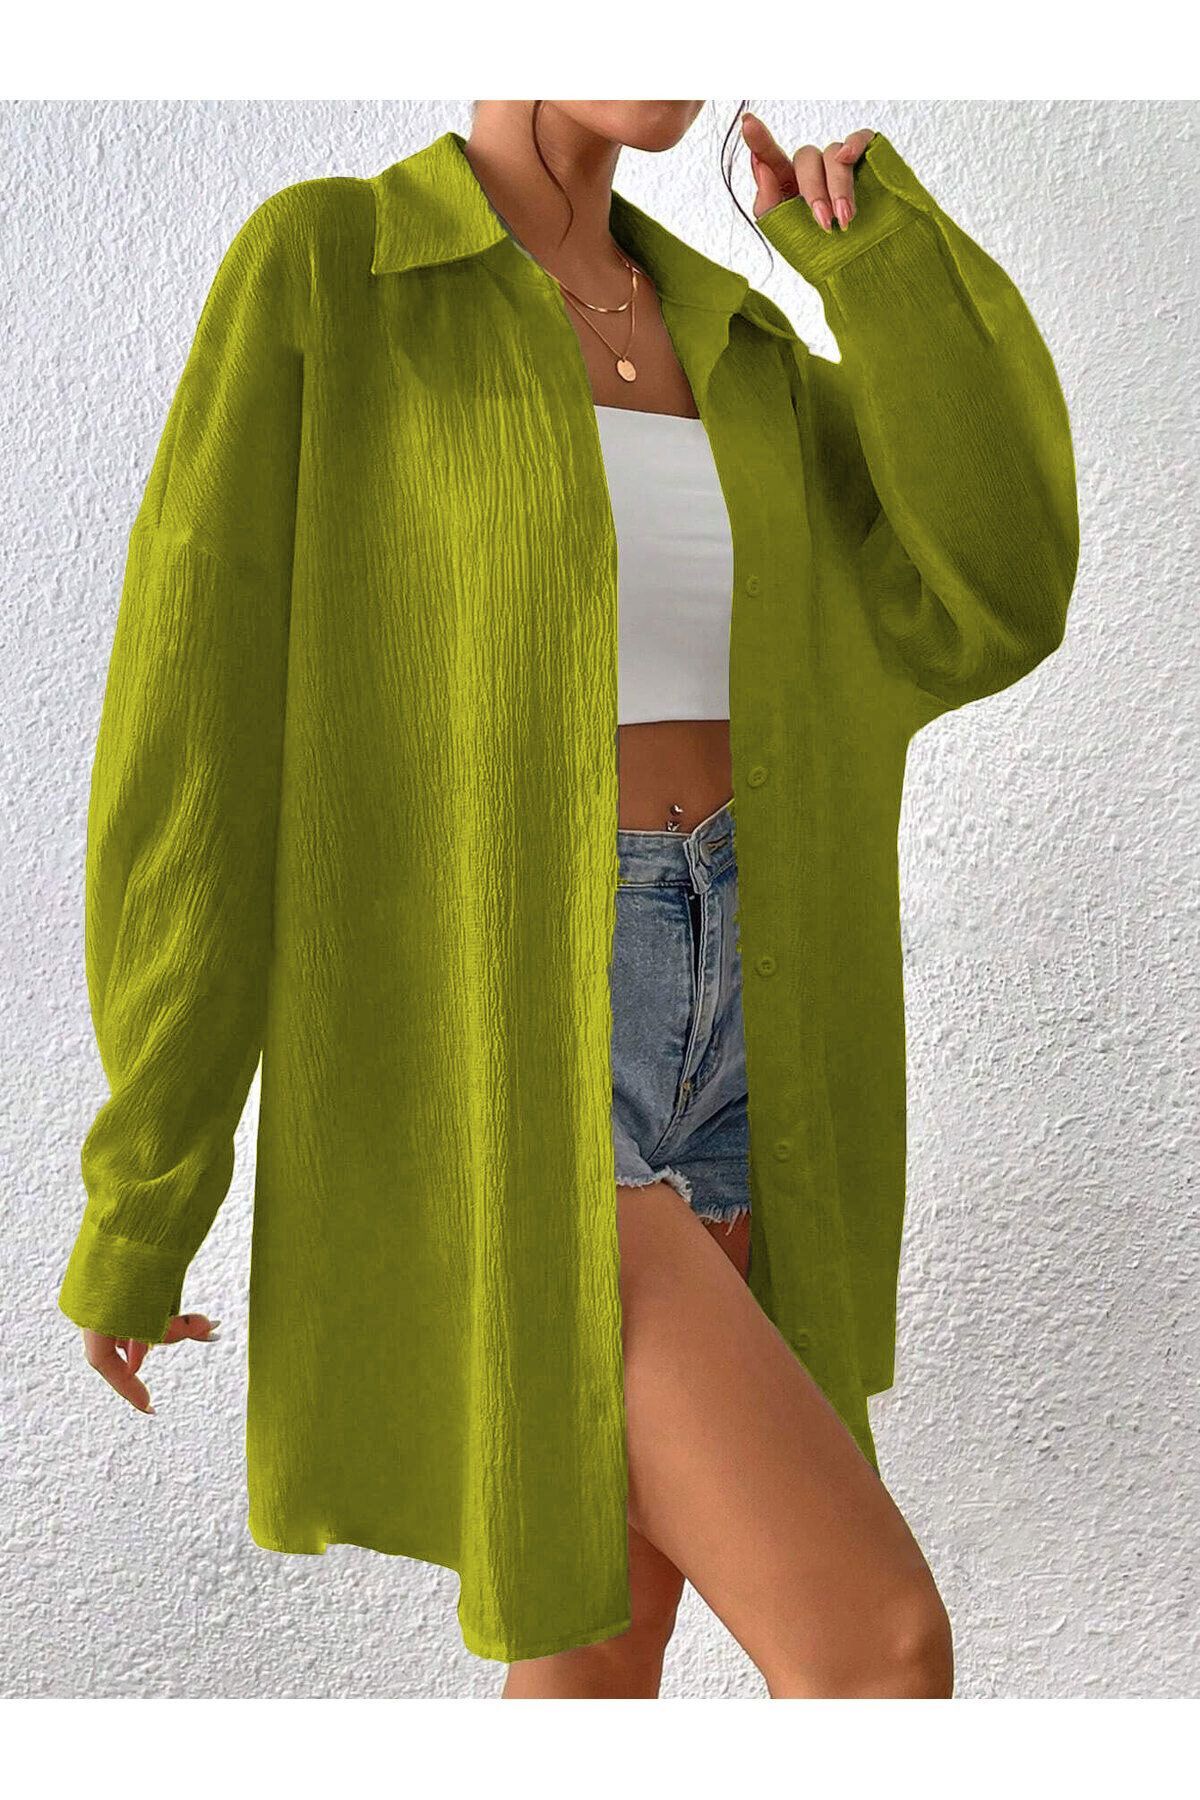 Know Kadın Yağ Yeşili Oversize Uzun Gömlek